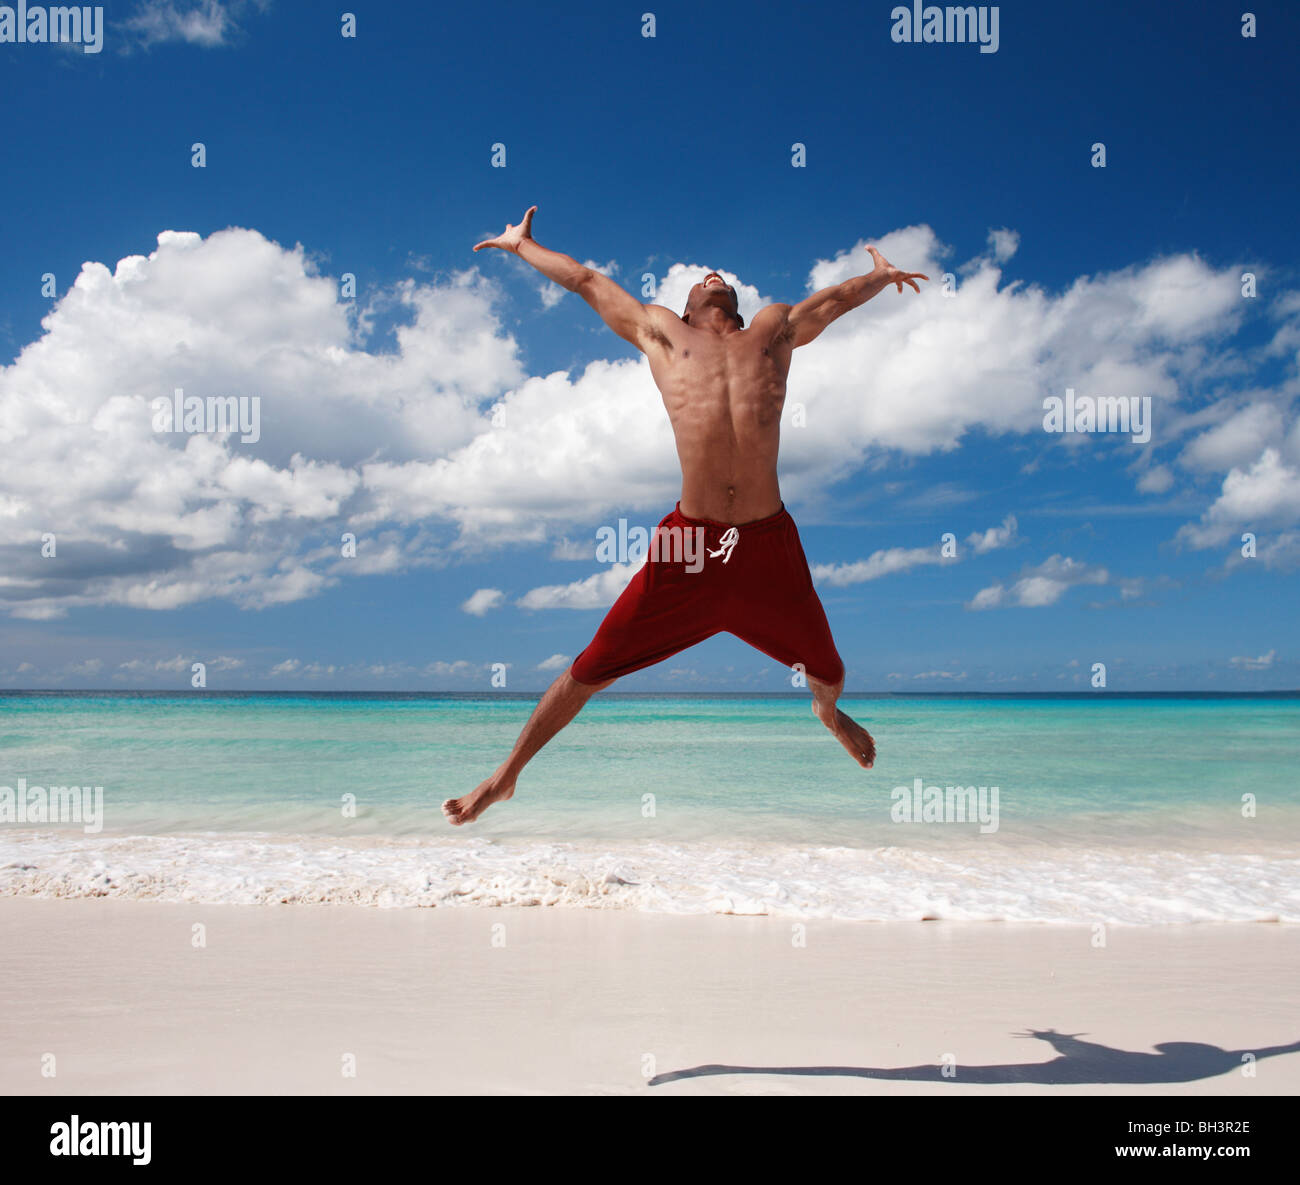 Junger Mann springt auf einem tropischen Strand, Lächeln Stockfoto